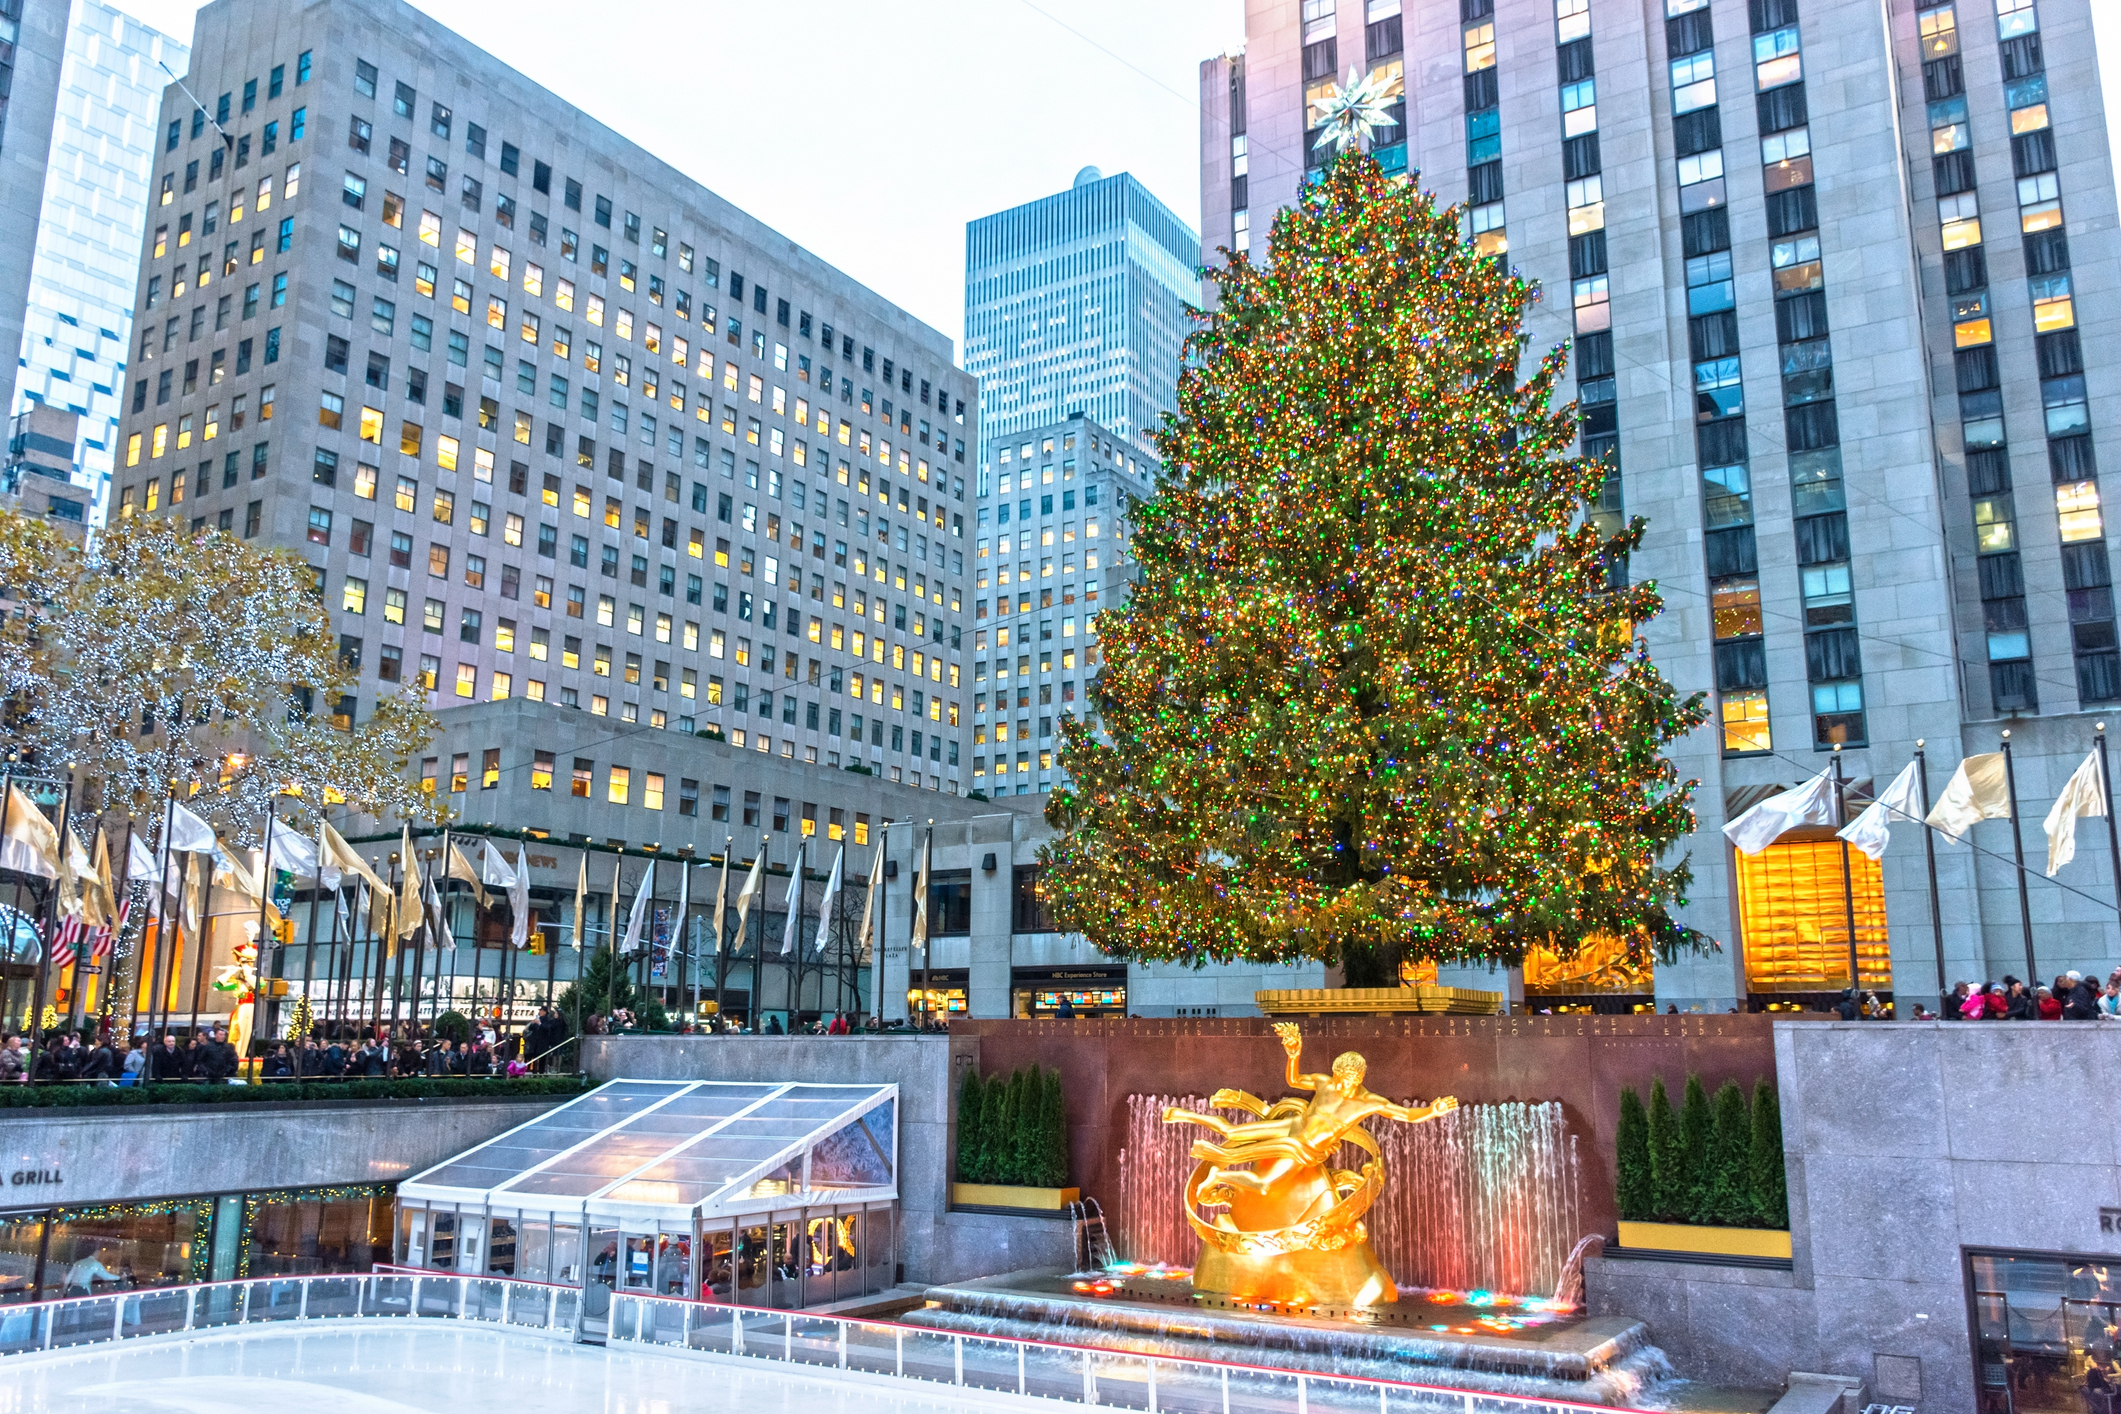 The Rockefeller Center Christmas Tree lit during the daytime